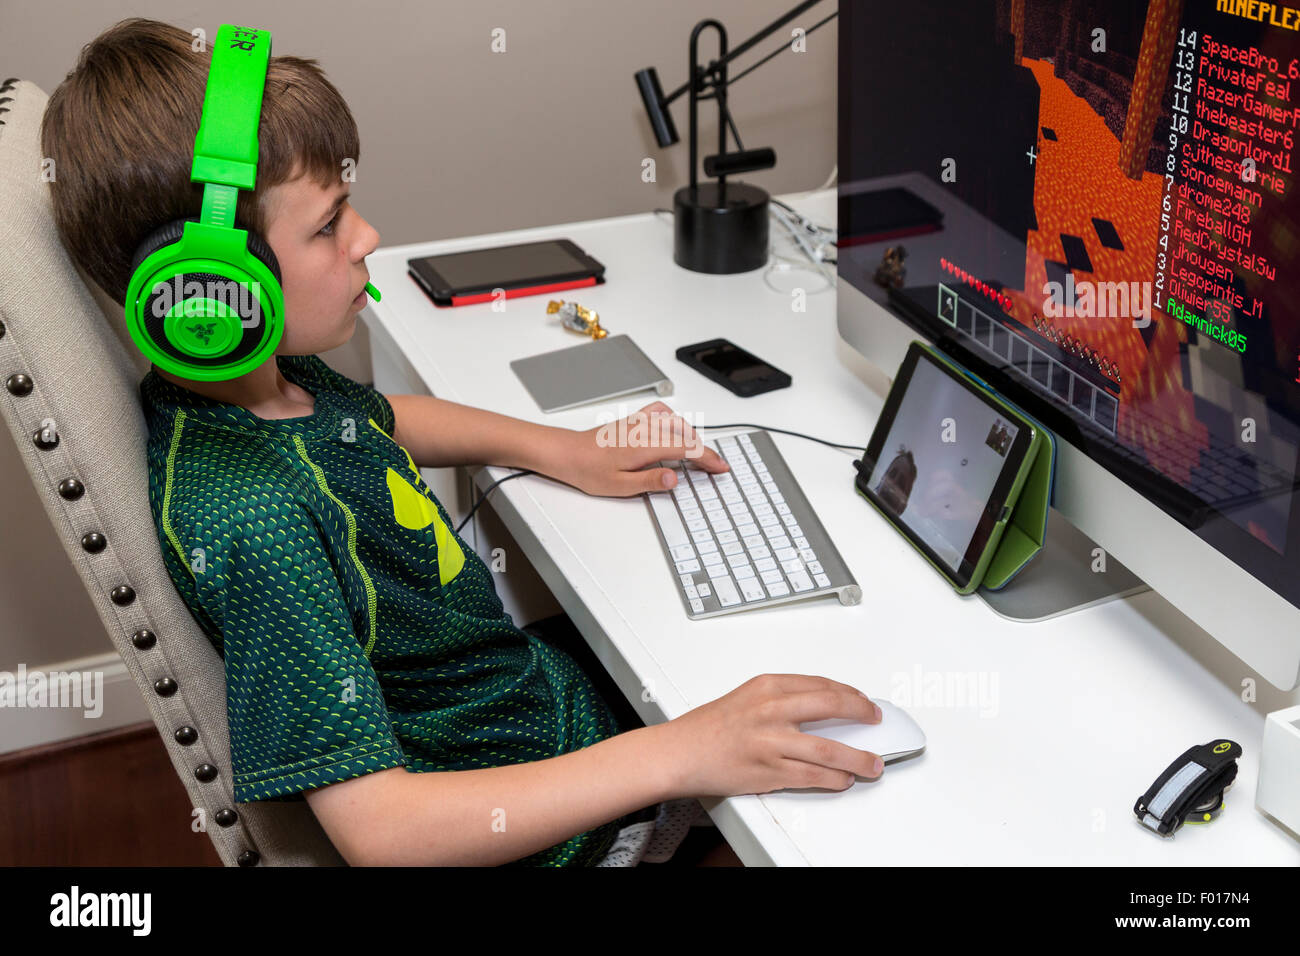 Deux jeunes garçons jouent à des jeux vidéo à longue distance, la communication via Facetime. M. Banque D'Images